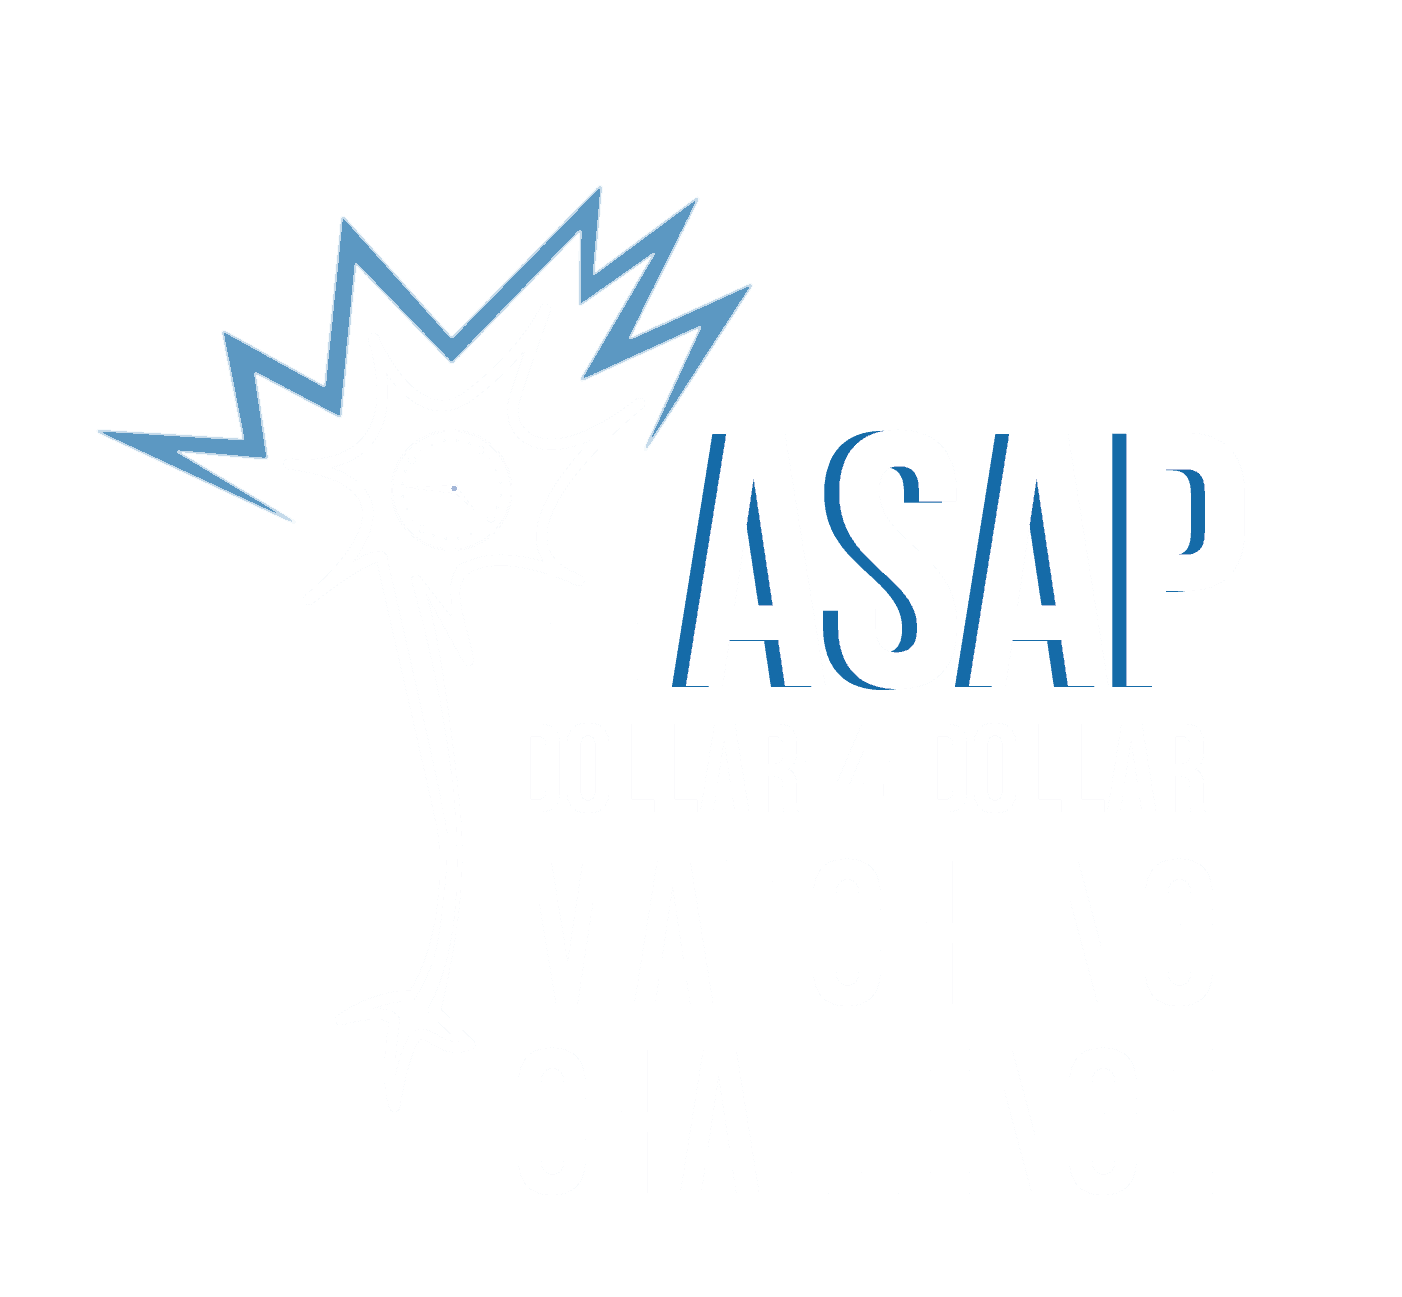 De ASAP Dollar-4-Dollar Matching Challenge